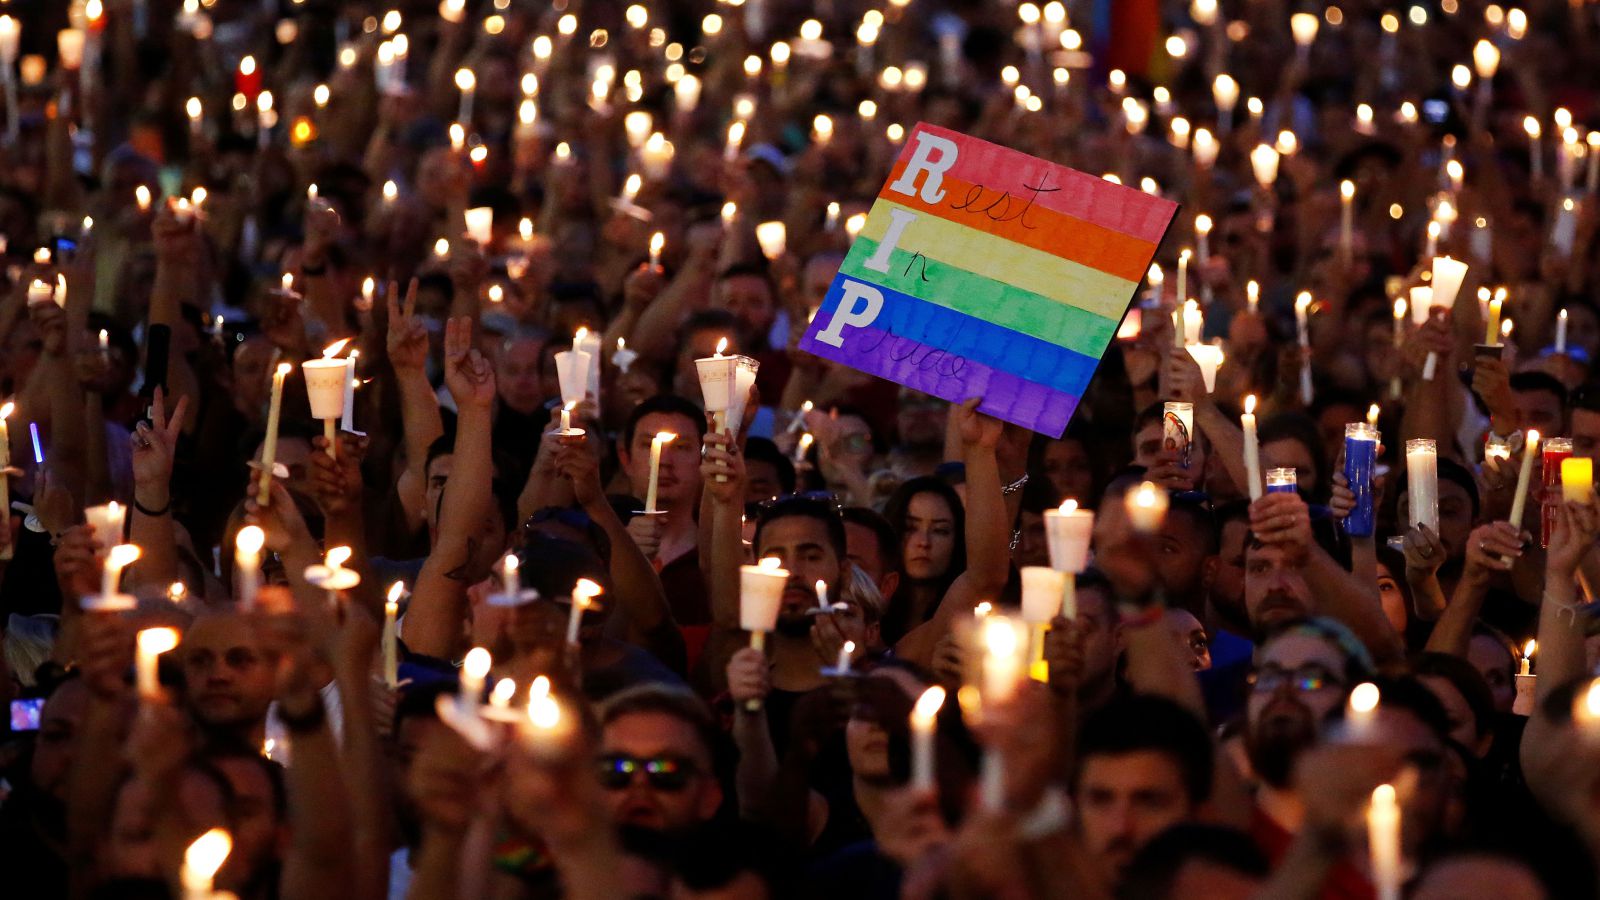 El egoísmo en las matanzas como la de Orlando